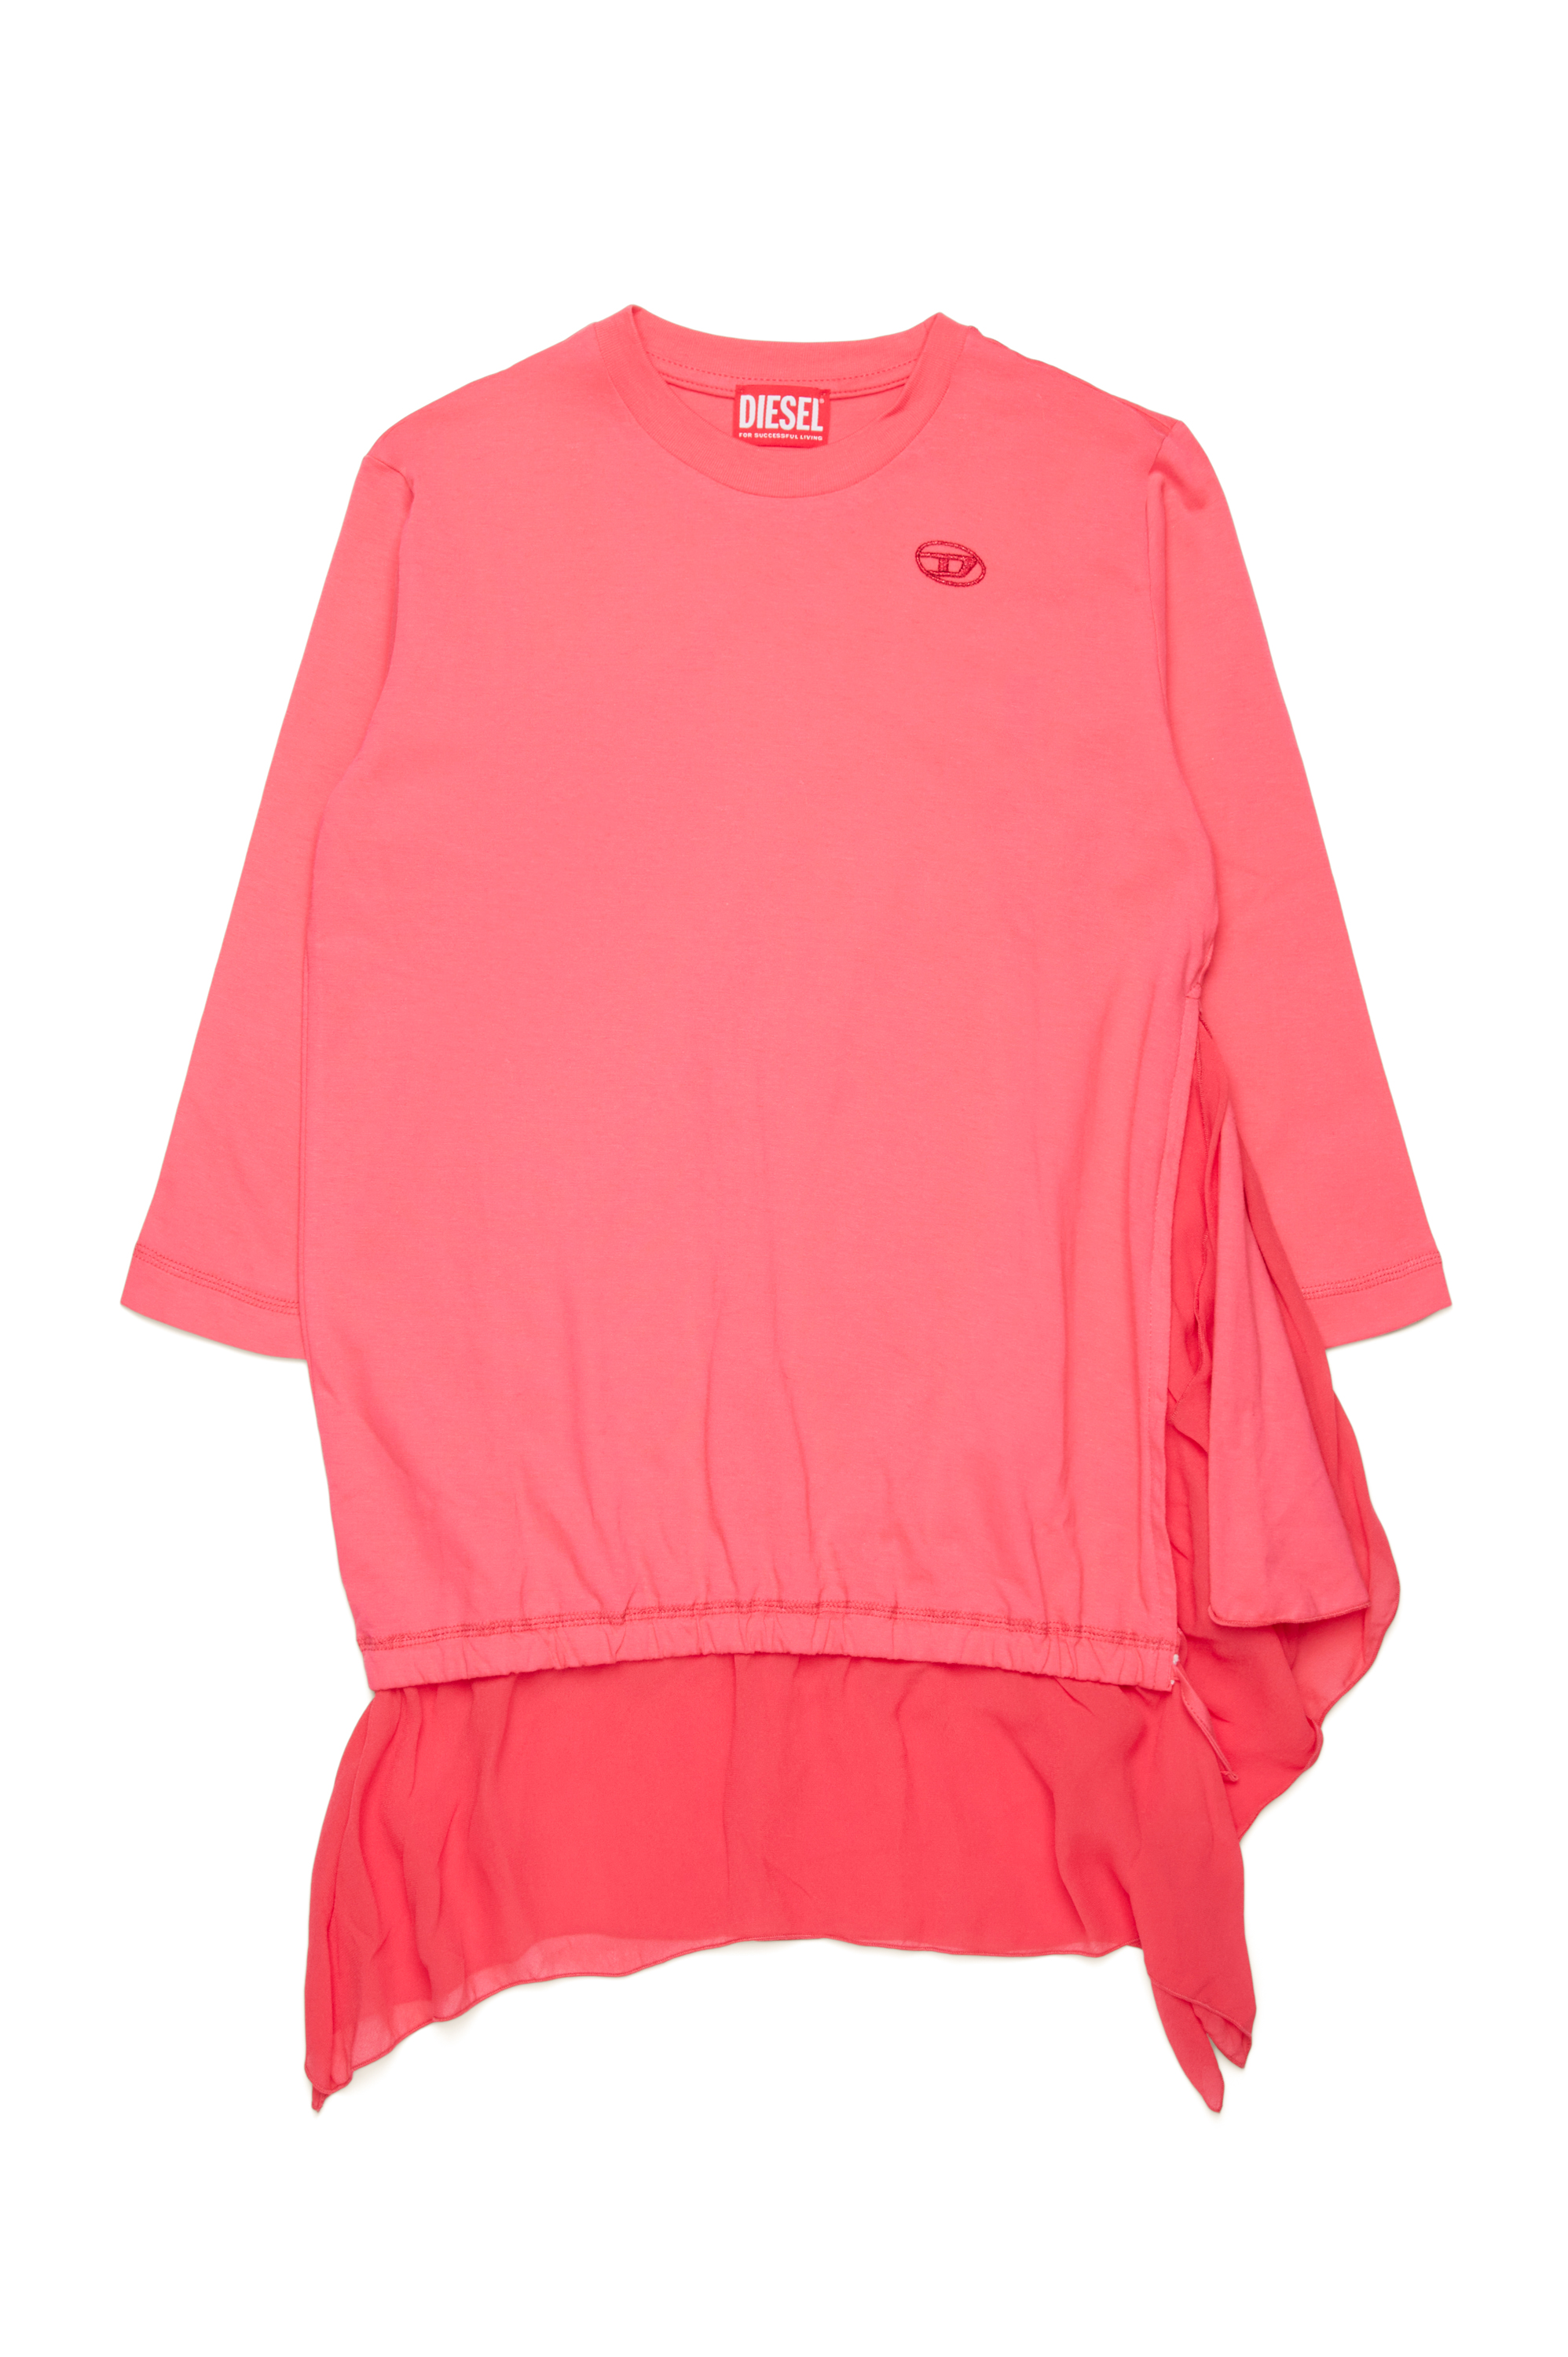 Diesel - DROLLETTE ML, Mujer Vestido camiseta con dobladillo flotante in Rosa - Image 1